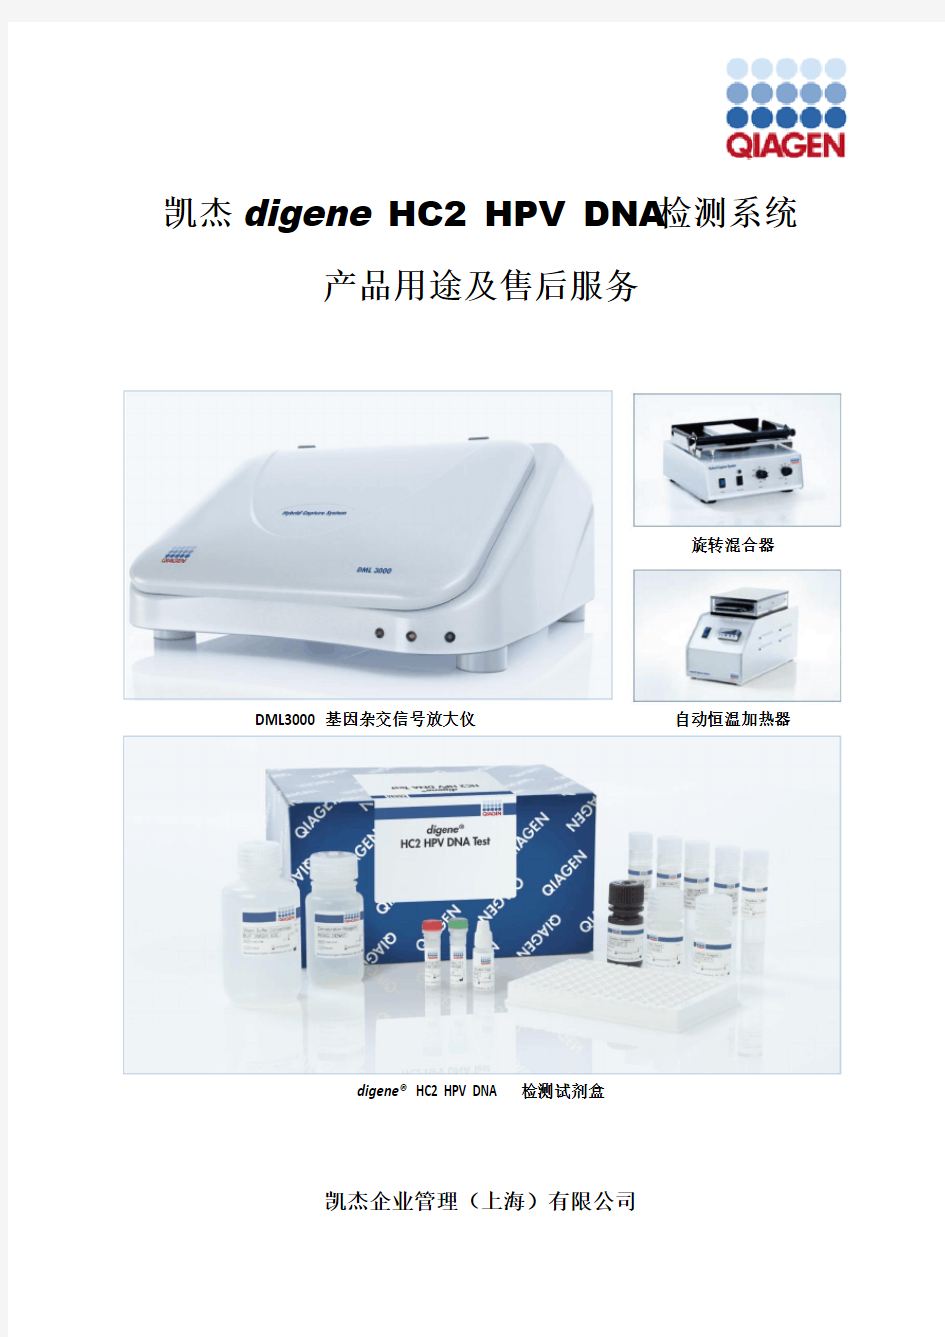 凯杰digene HC2 HPV检测系统产品应用及售后服务